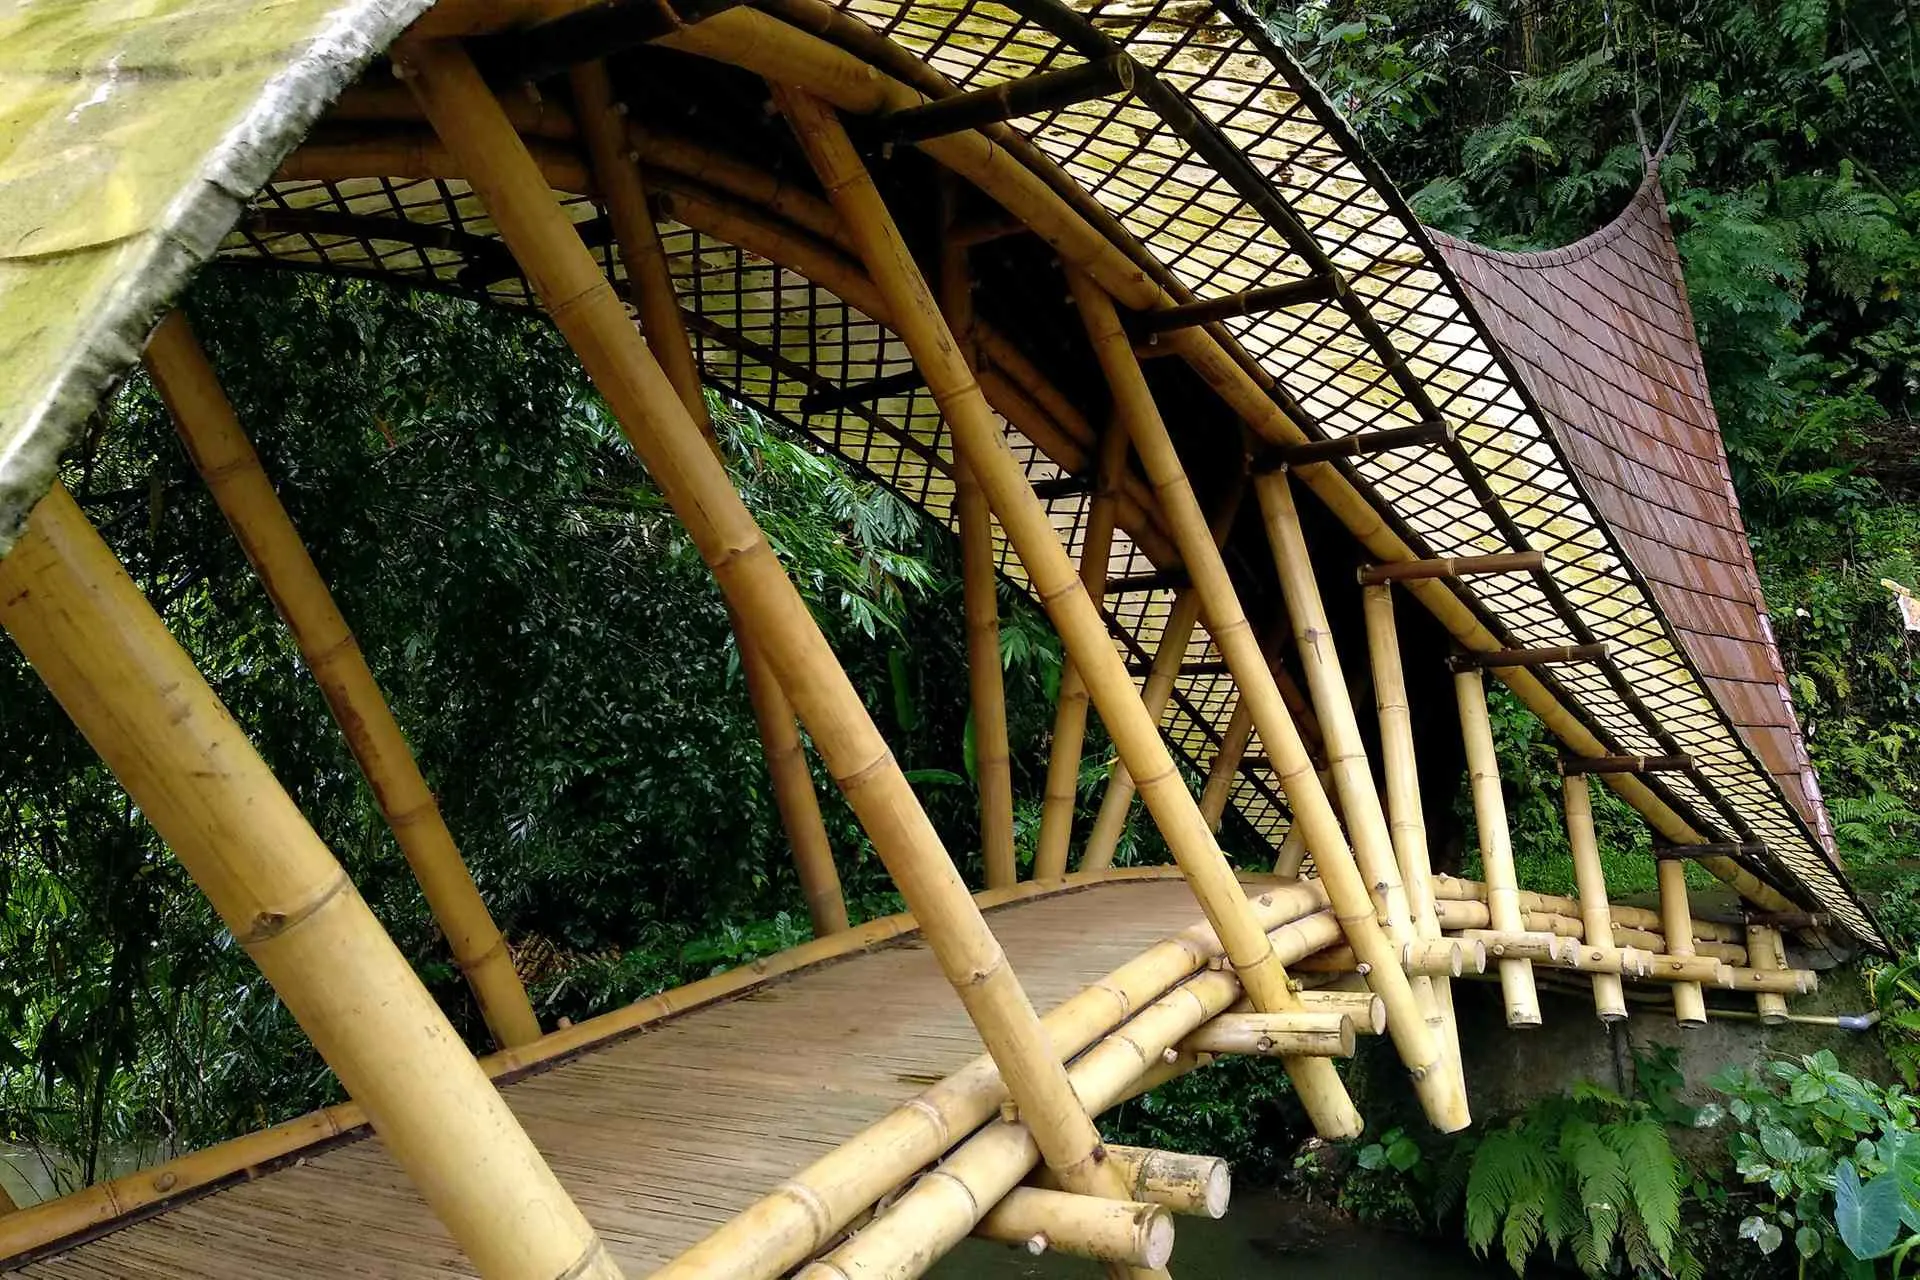 Bamboo bridge. Photo by Rokma